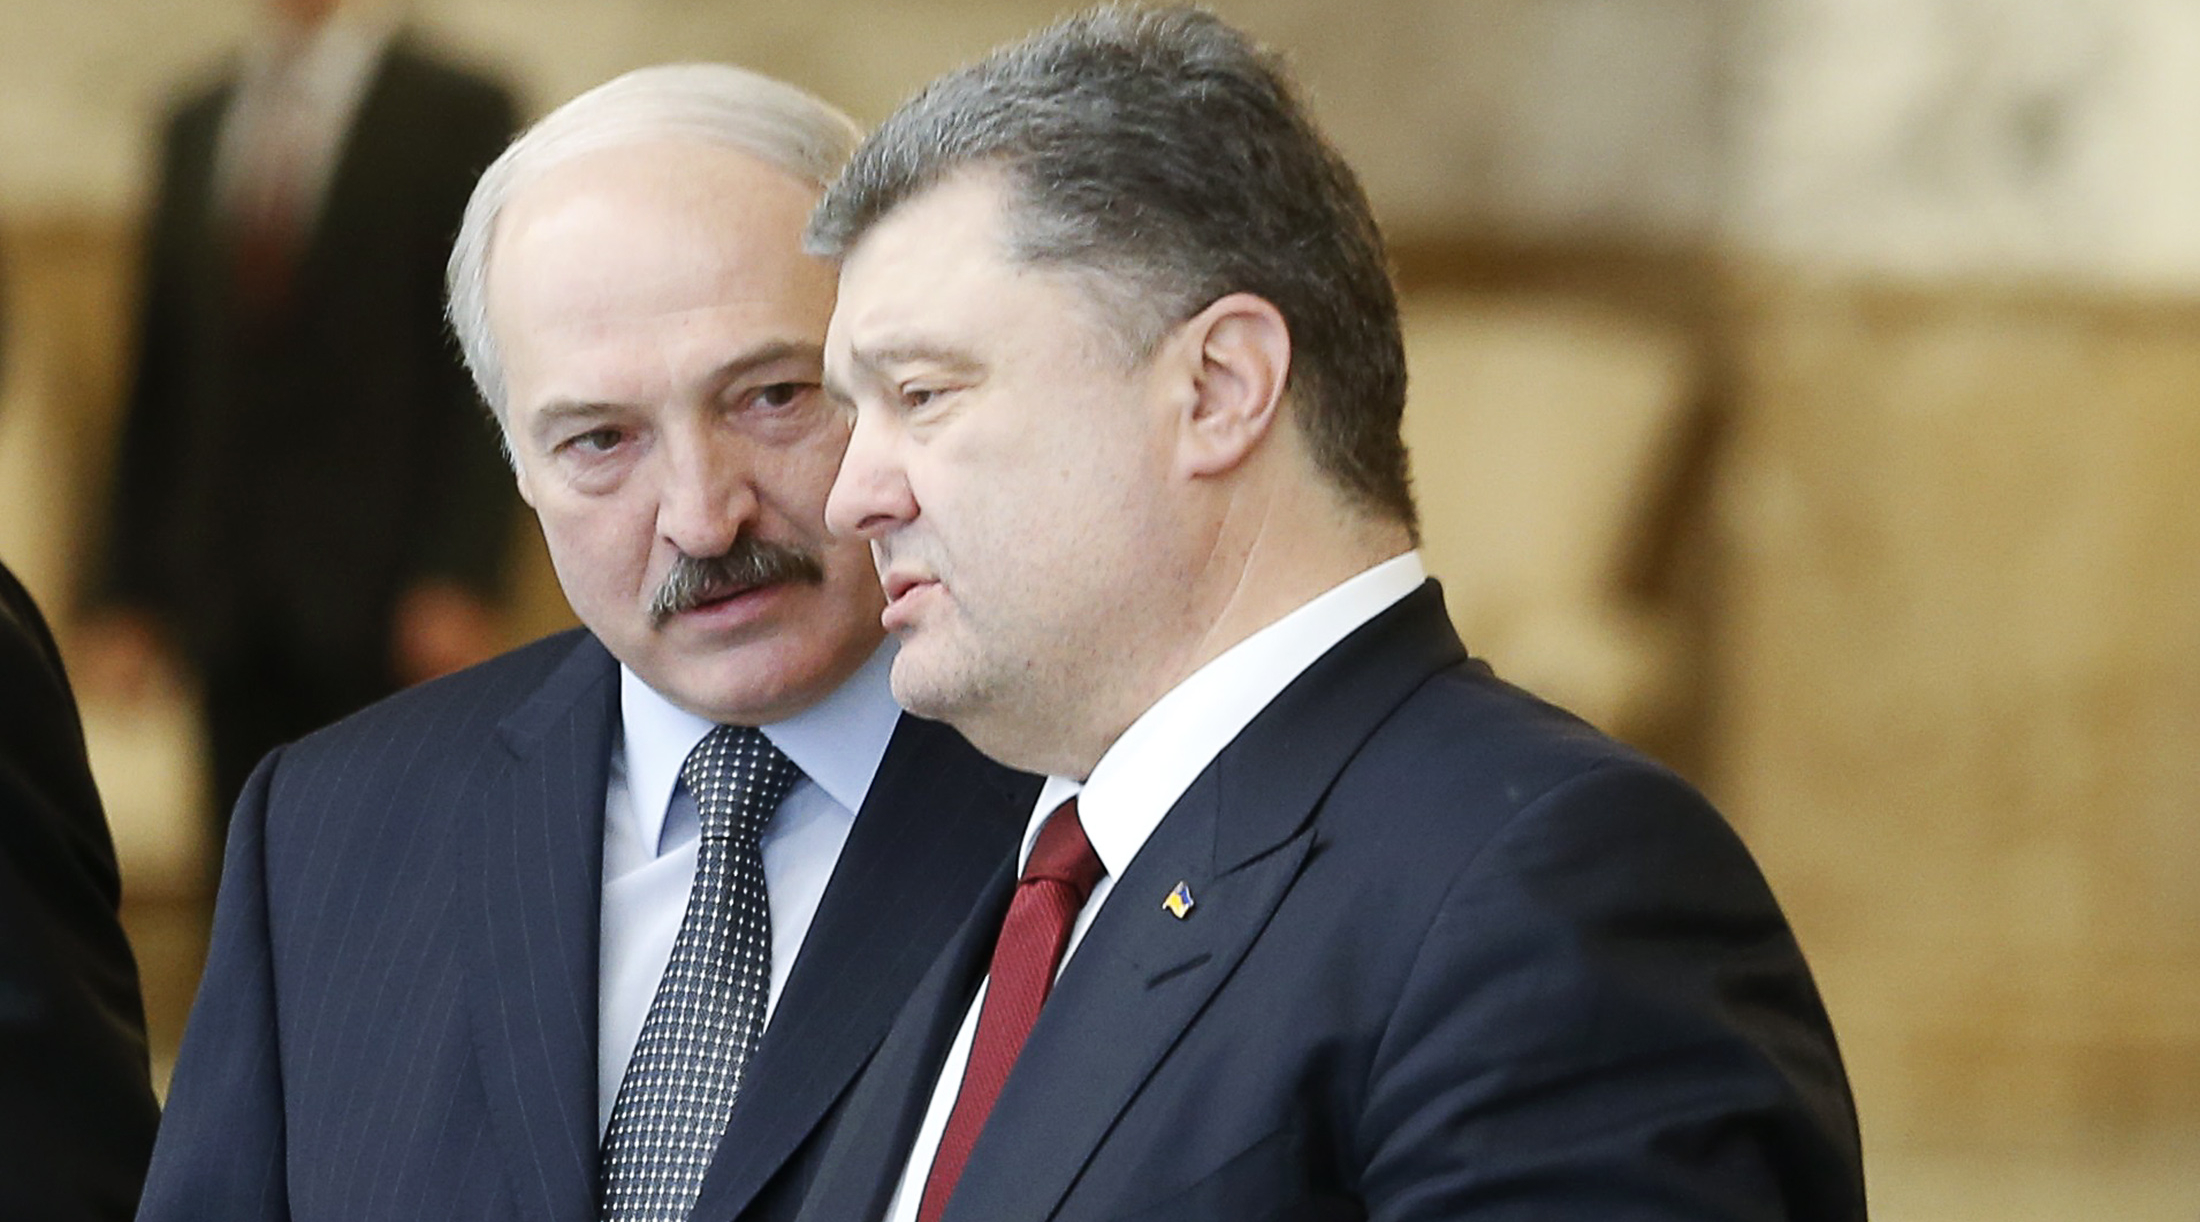 Порошенко извинился перед Лукашенко за инцидент с самолётом